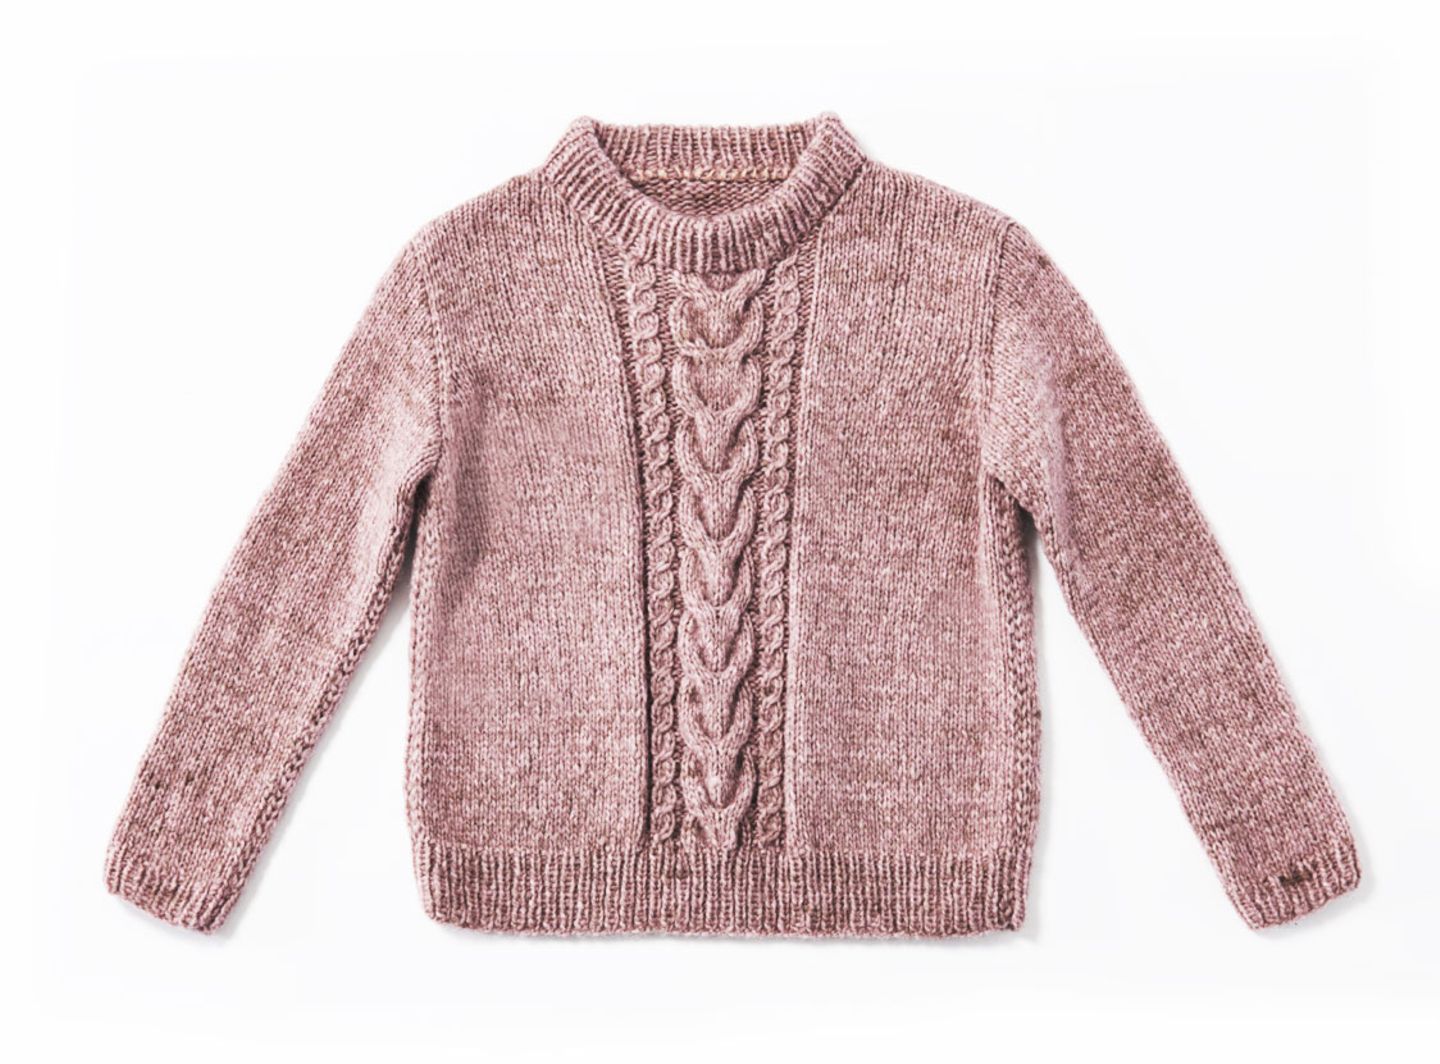 Einen Pullover mit Zöpfen zu stricken, ist etwas aufwendiger. Aber die Arbeit lohnt sich - unser Strickpulli ist ein treuer Begleiter durch den Winter. Zur Strickanleitung: Pullover mit Zöpfen